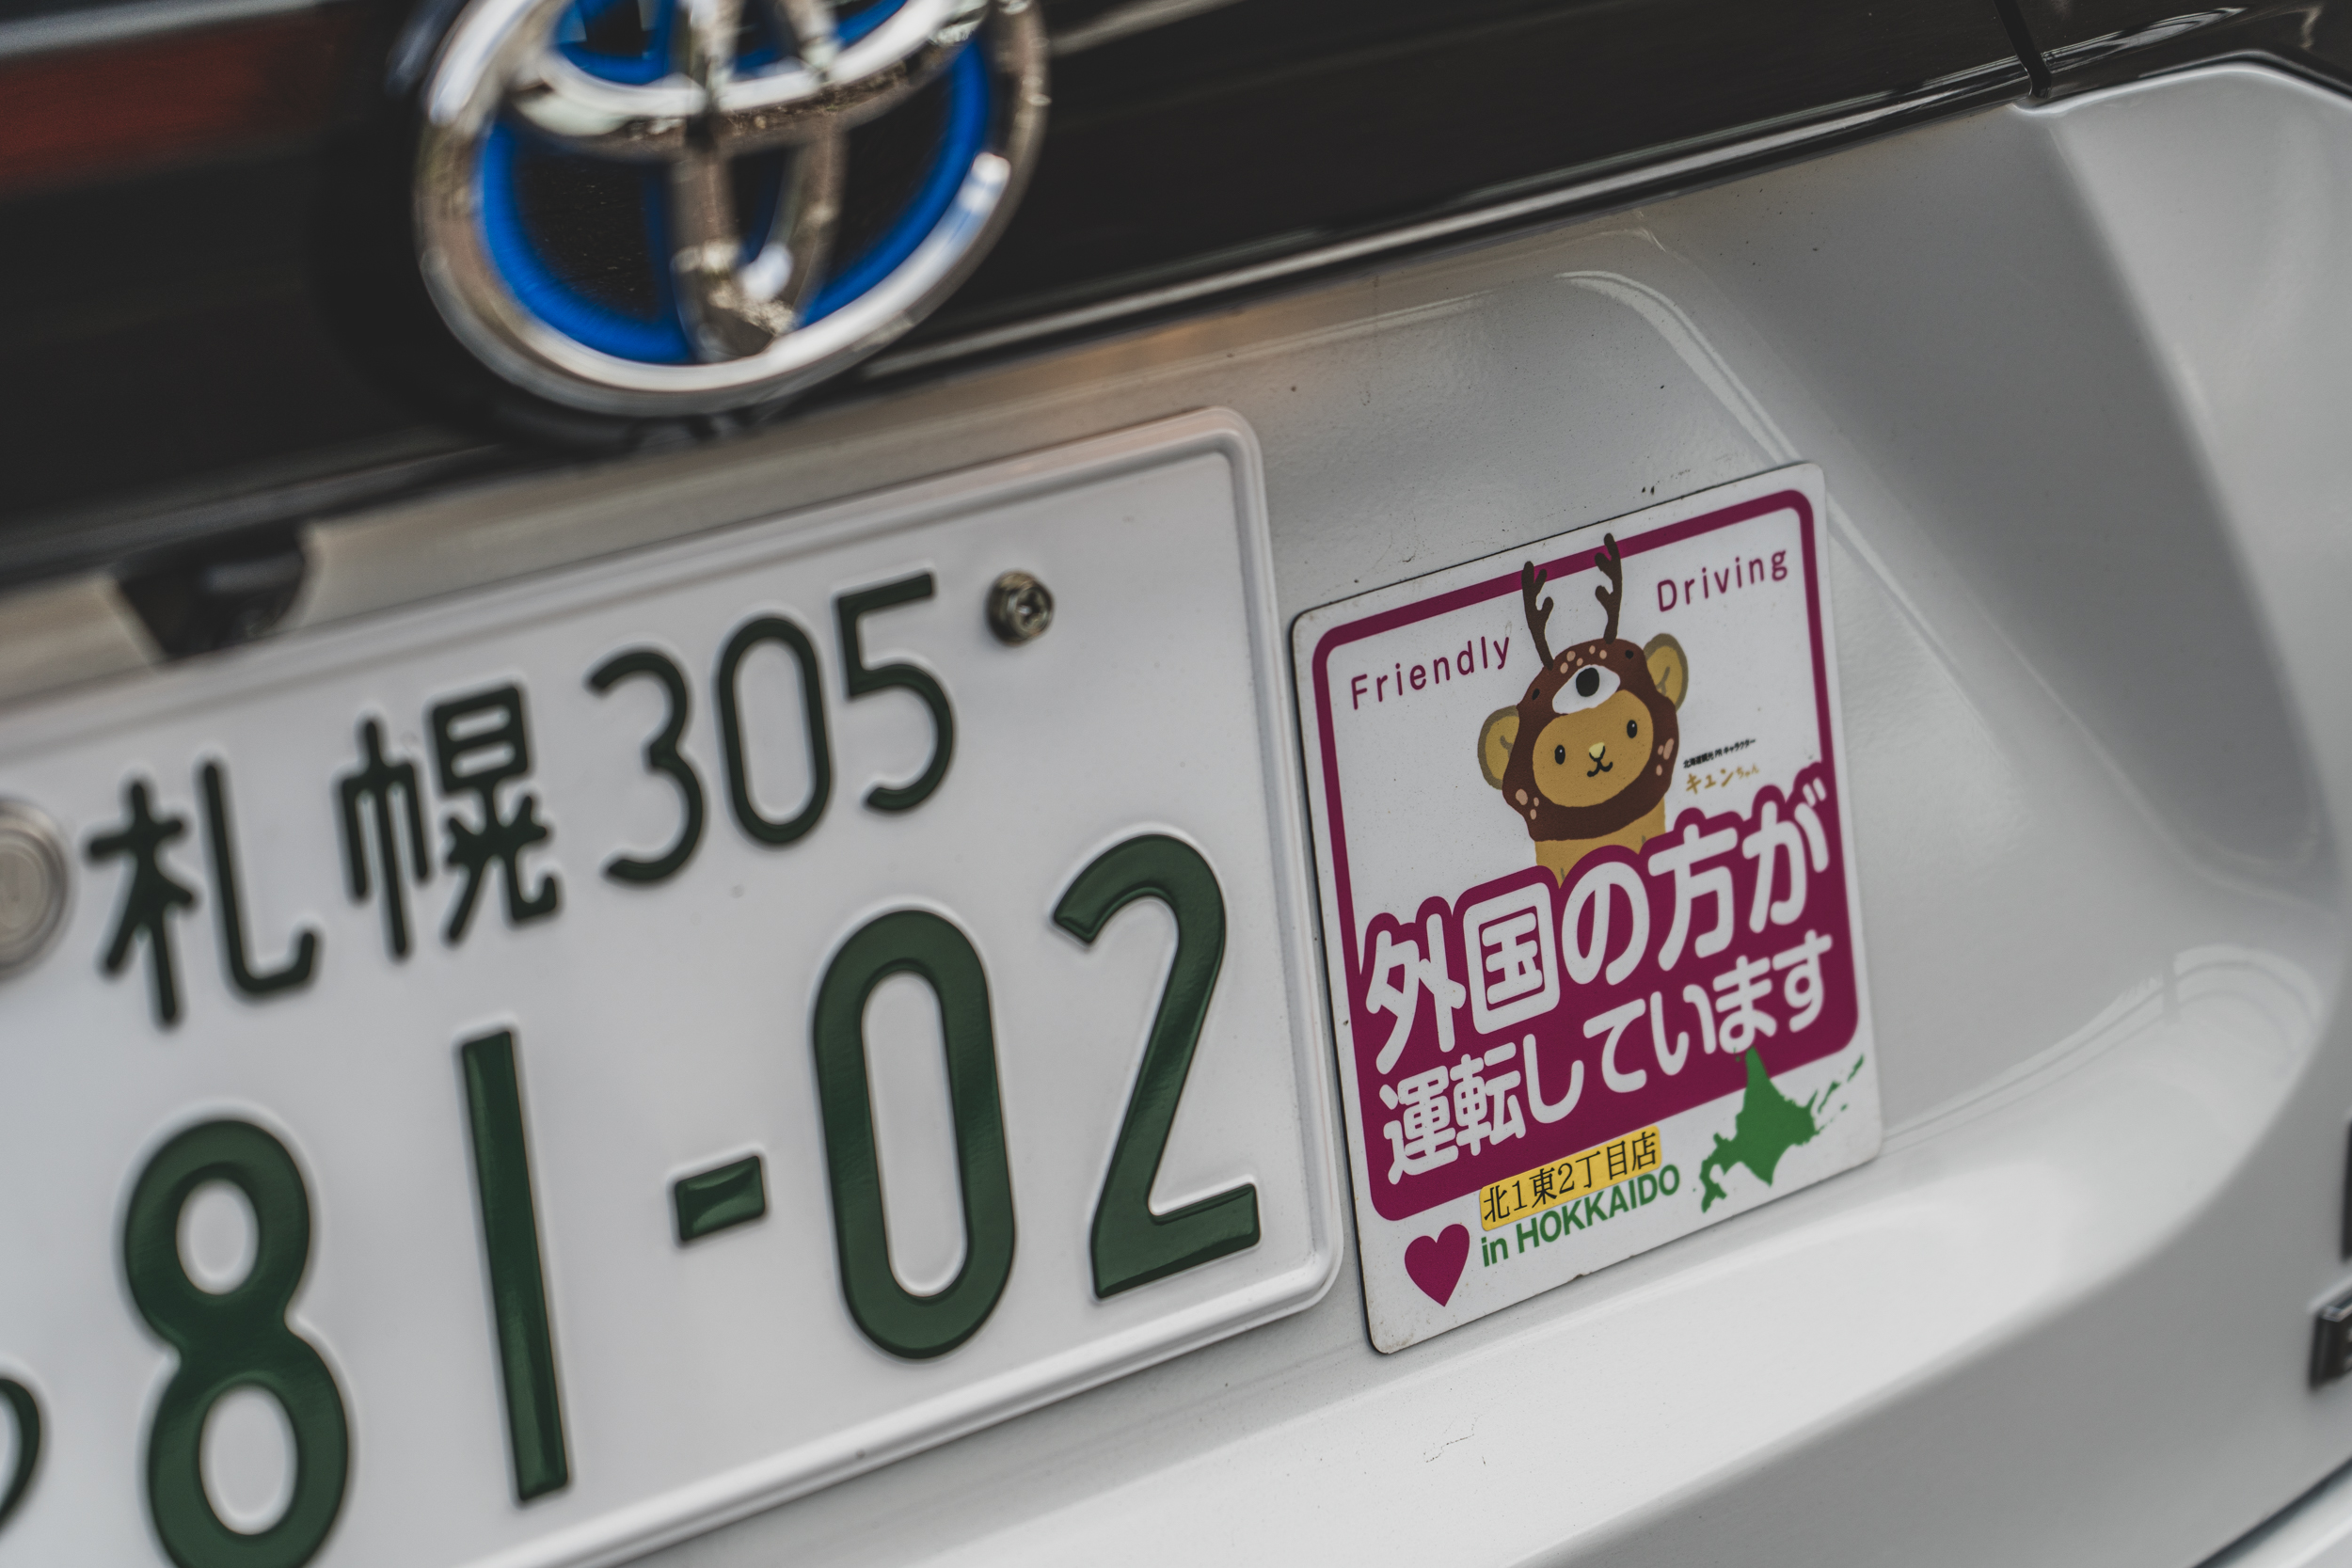 只要是國外遊客承租車輛，Toyota Rent a Car 租車公司都會貼上告示磁鐵來示意他人。